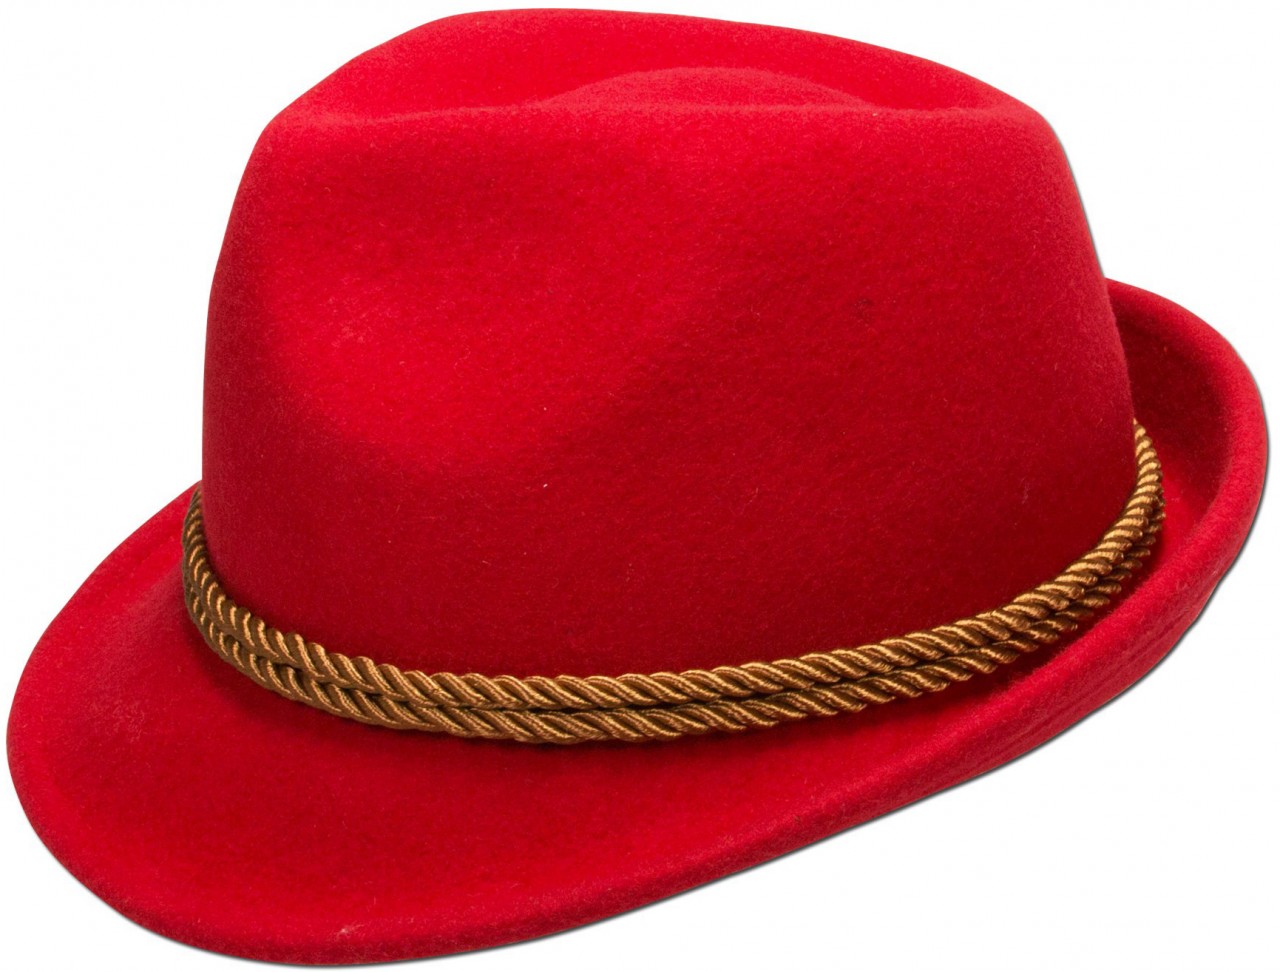 Aperçu: Chapeau en feutre Ronja rouge